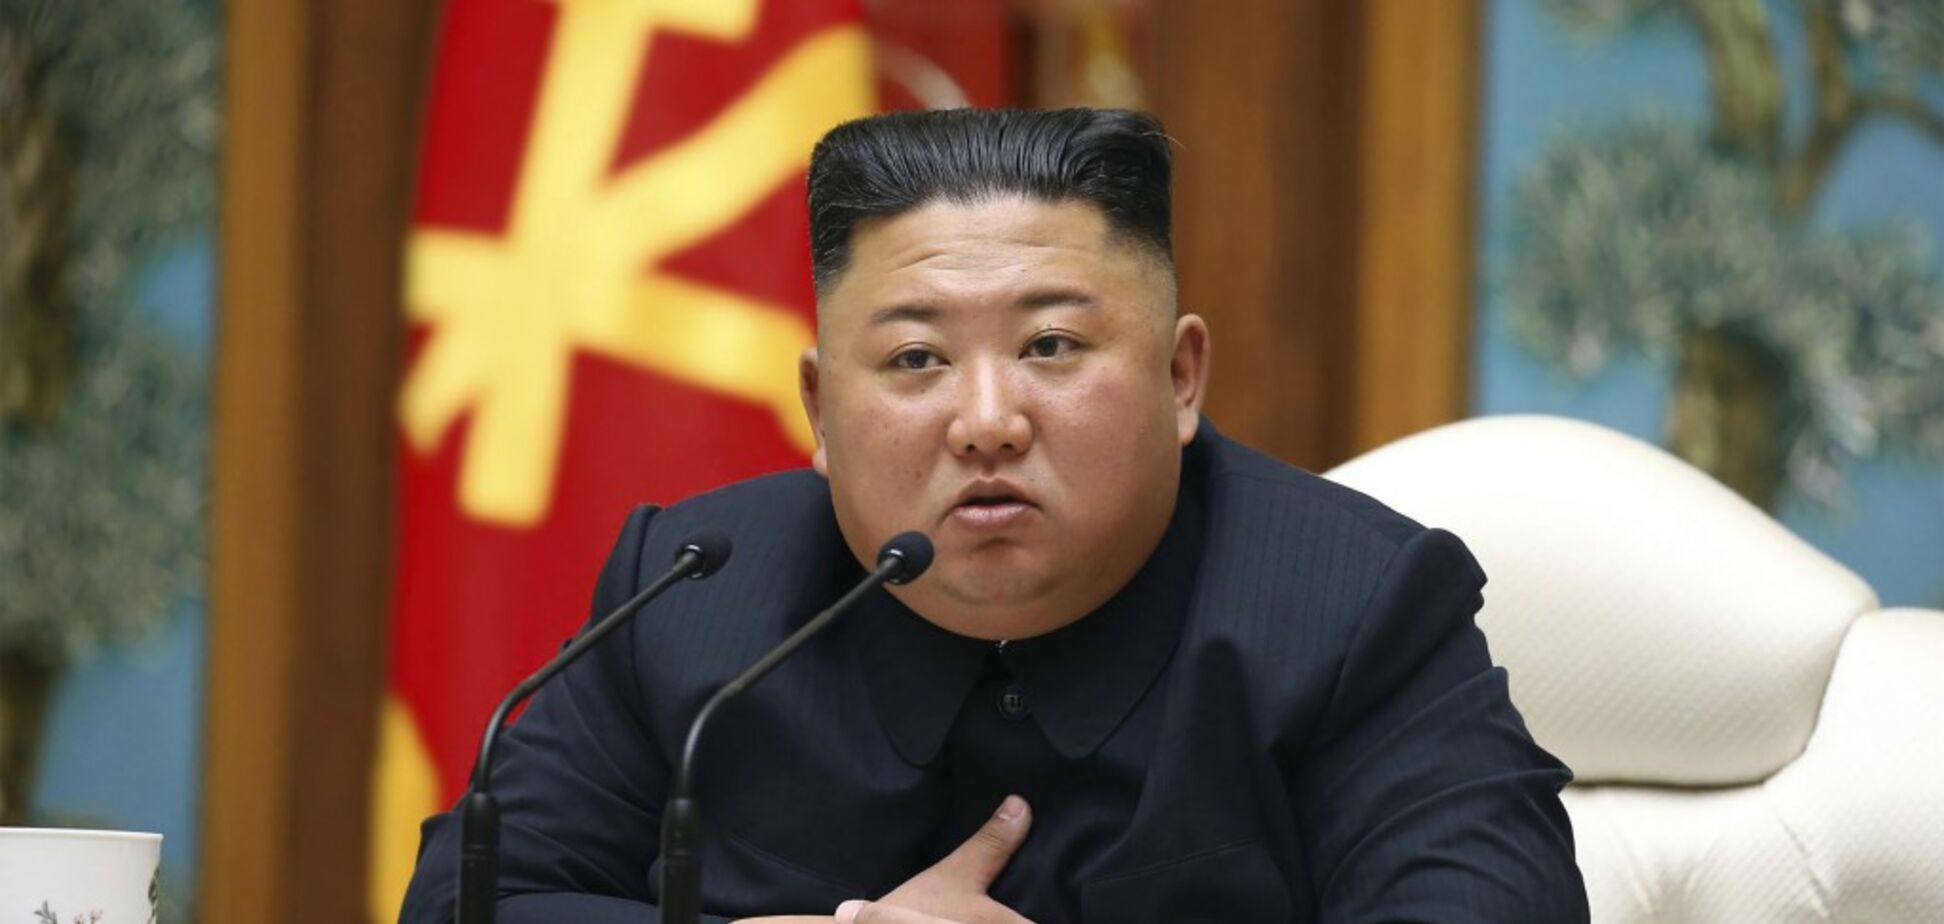 СМИ назвали причину предсмертного состояния Ким Чен Ына